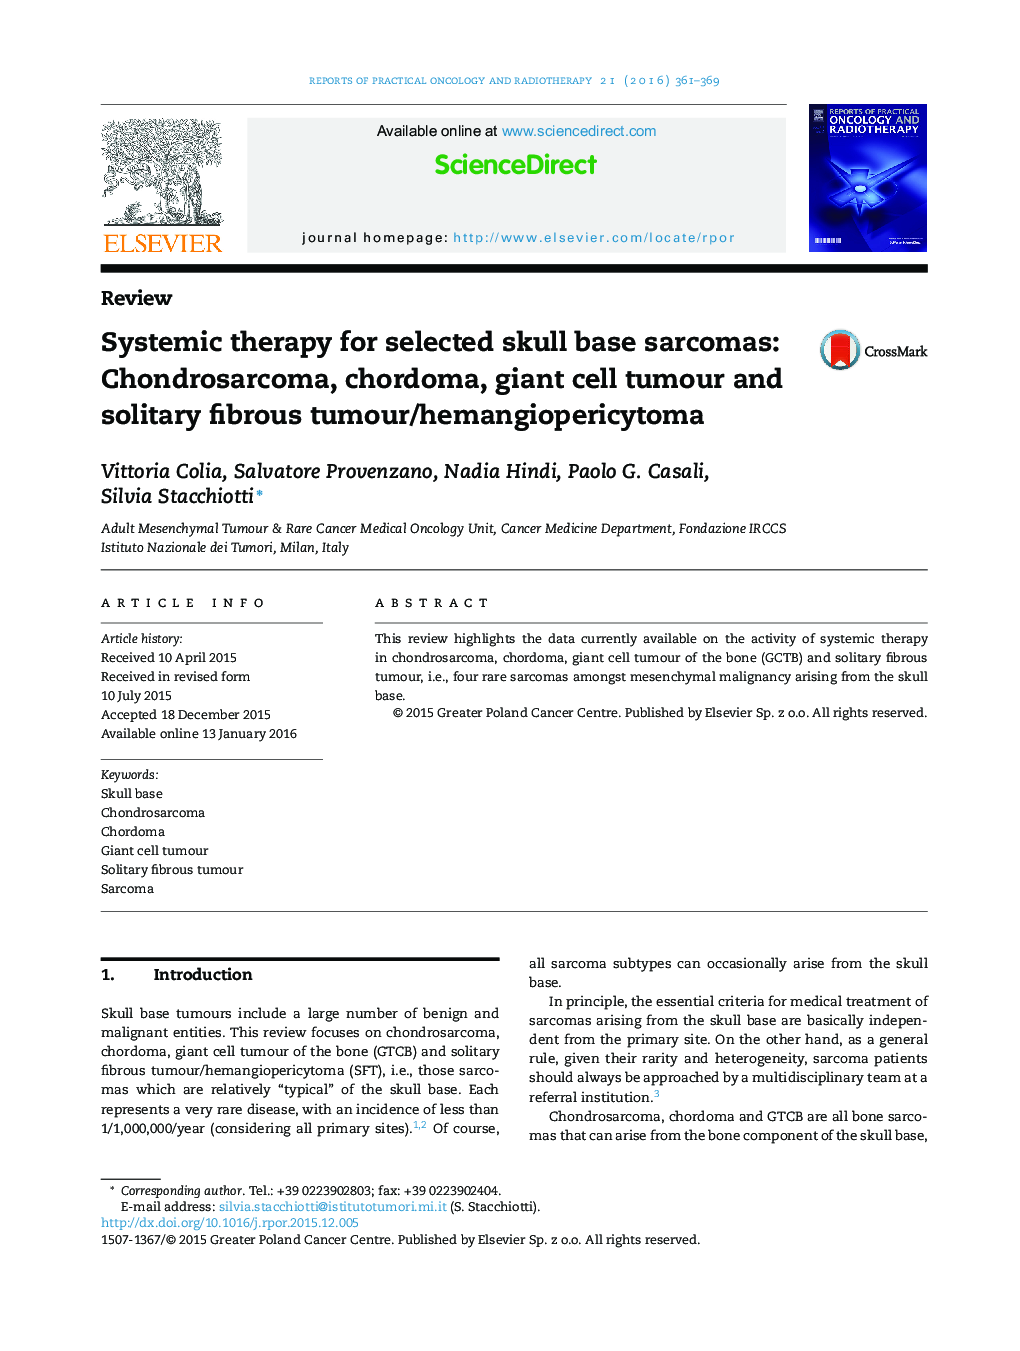 درمان سیستمیک برای انتخاب سارکوم های قاعده جمجمه: کندروسارکوما، chordoma، سلول های غول پیکر تومور و تومور/همانژیوپریستوما فیبر انفرادی 